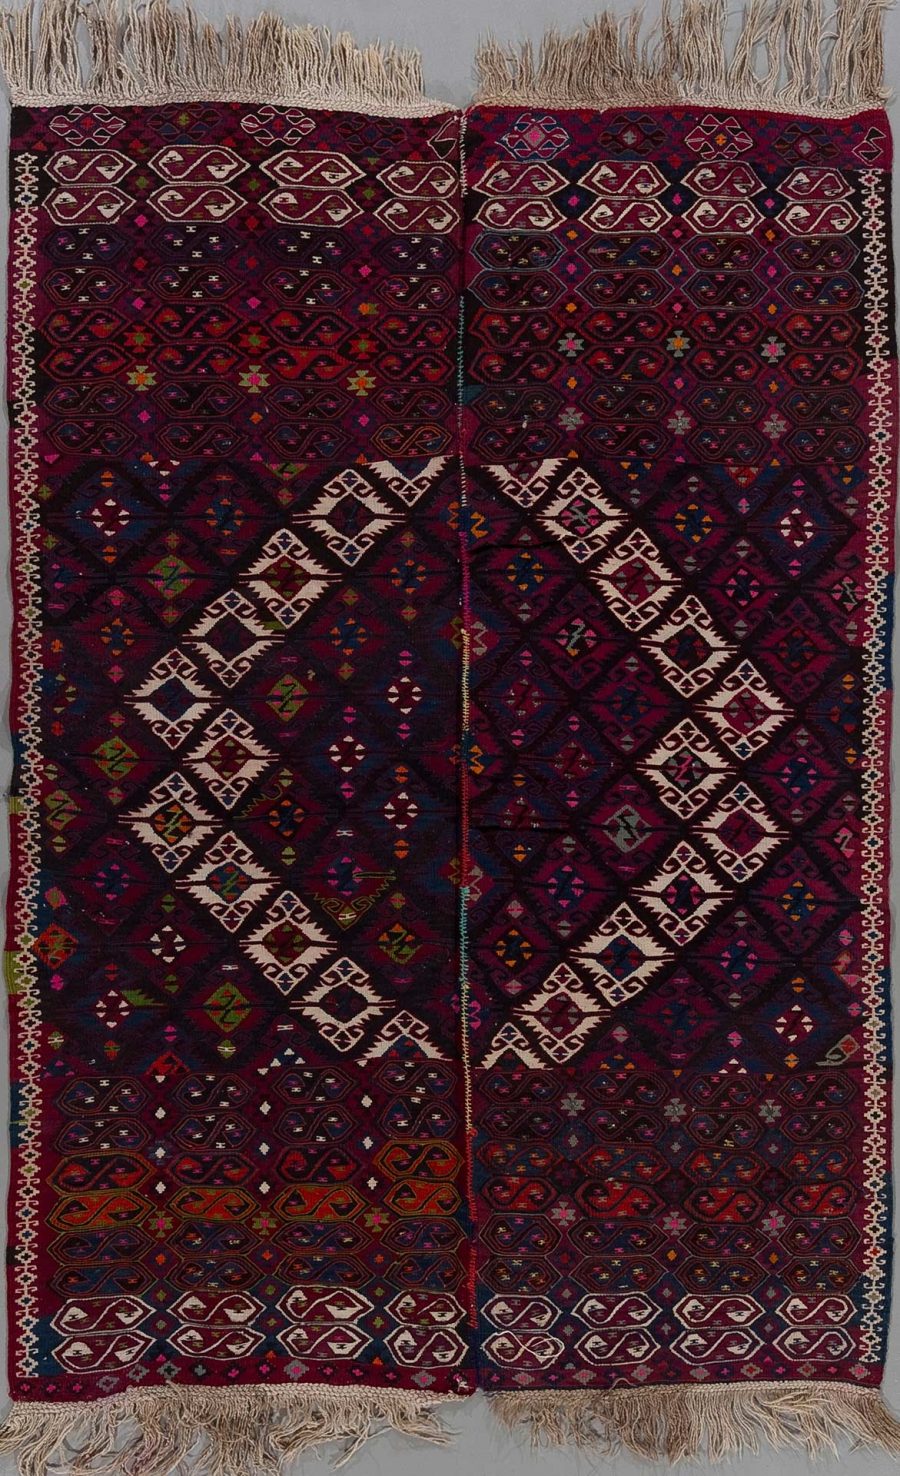 Traditioneller, handgewebter Teppich mit komplexem, geometrischem Muster in vorwiegend dunklen Burgunder-, Blau- und Beigetönen und Fransen an den Enden.